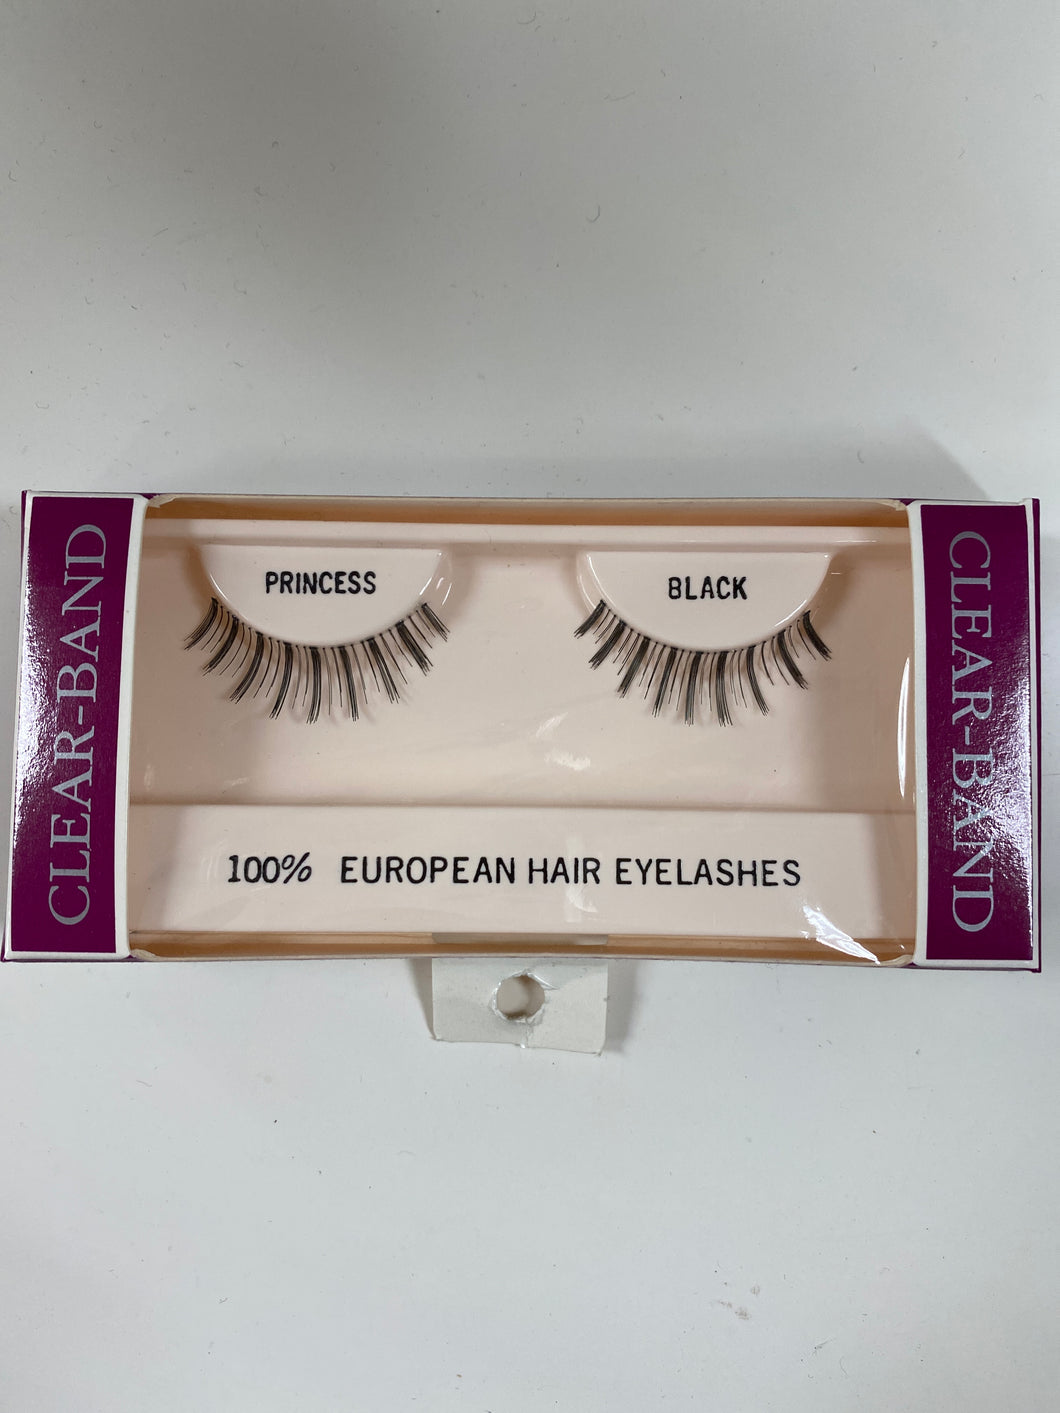 Beautee Sense Clear-band 100% European Hair Eyelashes - Princess